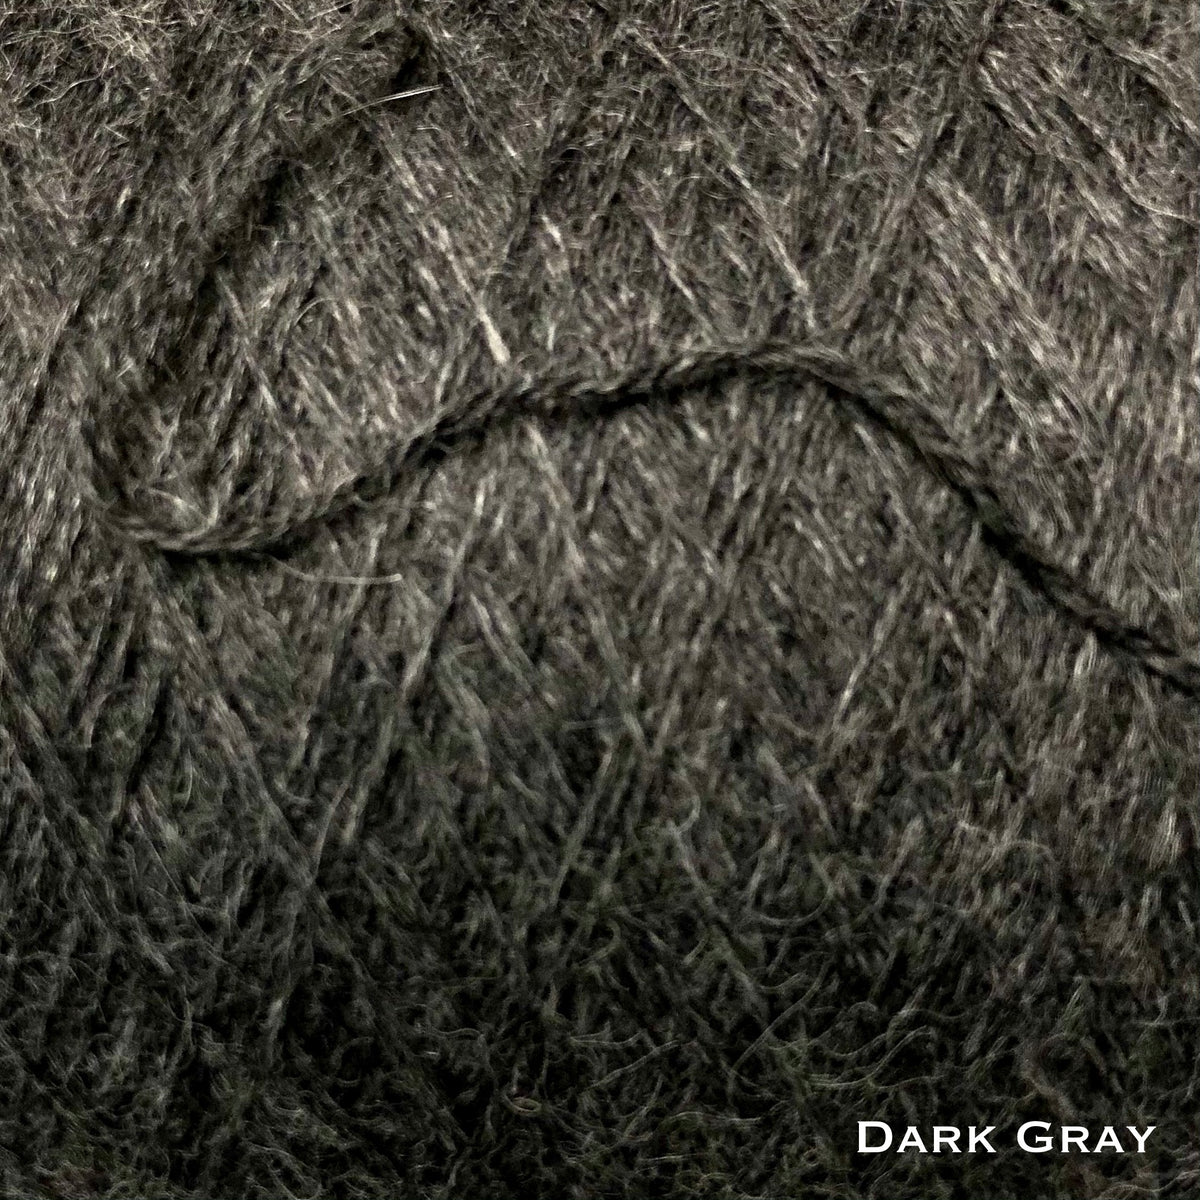 dark gray wool yarn